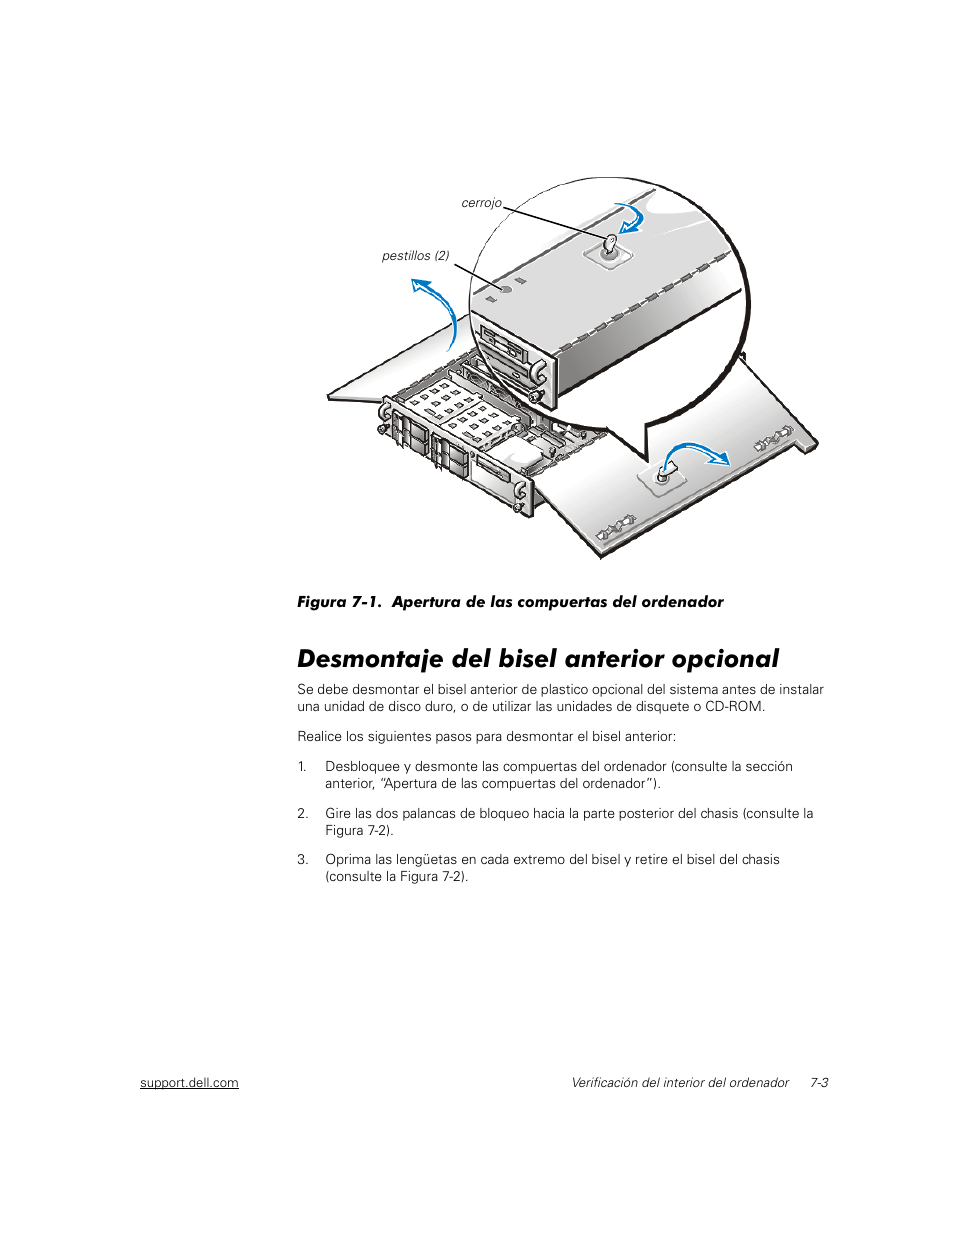 Desmontaje del bisel anterior opcional | Dell PowerEdge 2450 Manual del usuario | Página 63 / 176